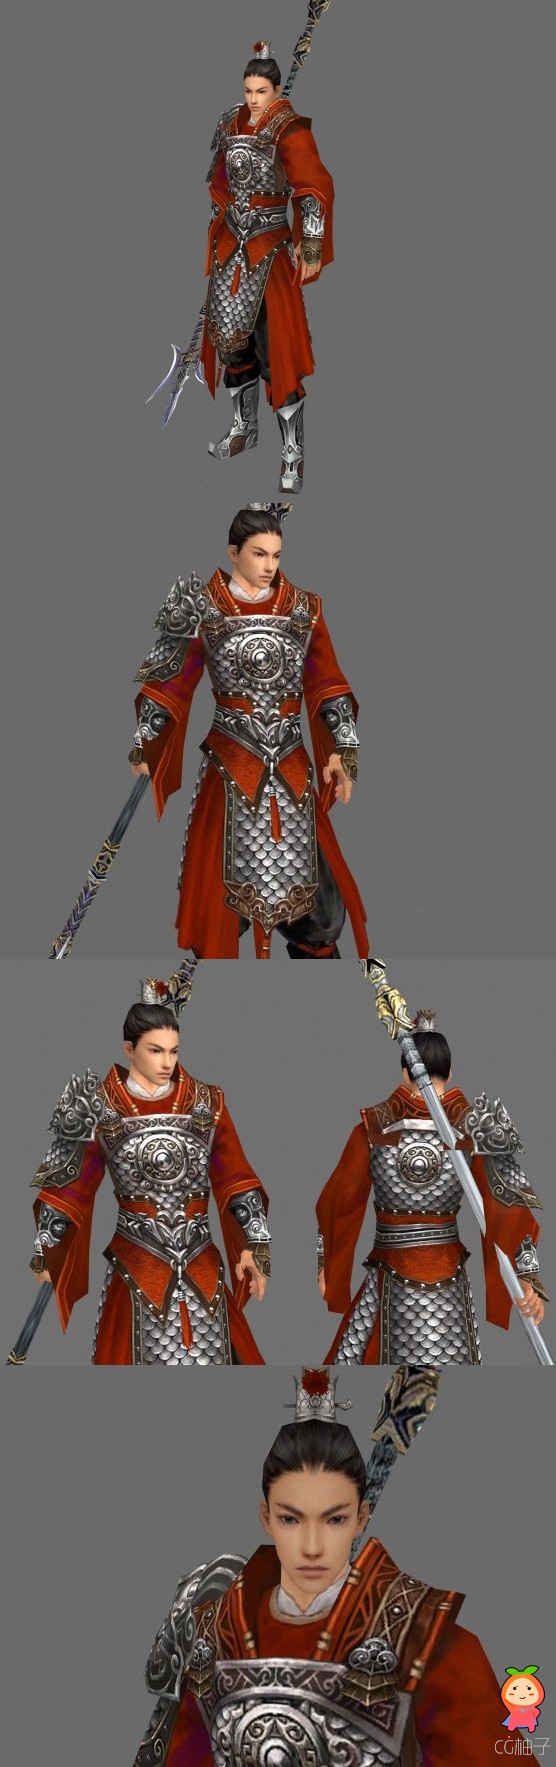 《剑三》佩刀士兵3D模型下载,铠甲将军3D角色模型,3d美术资源